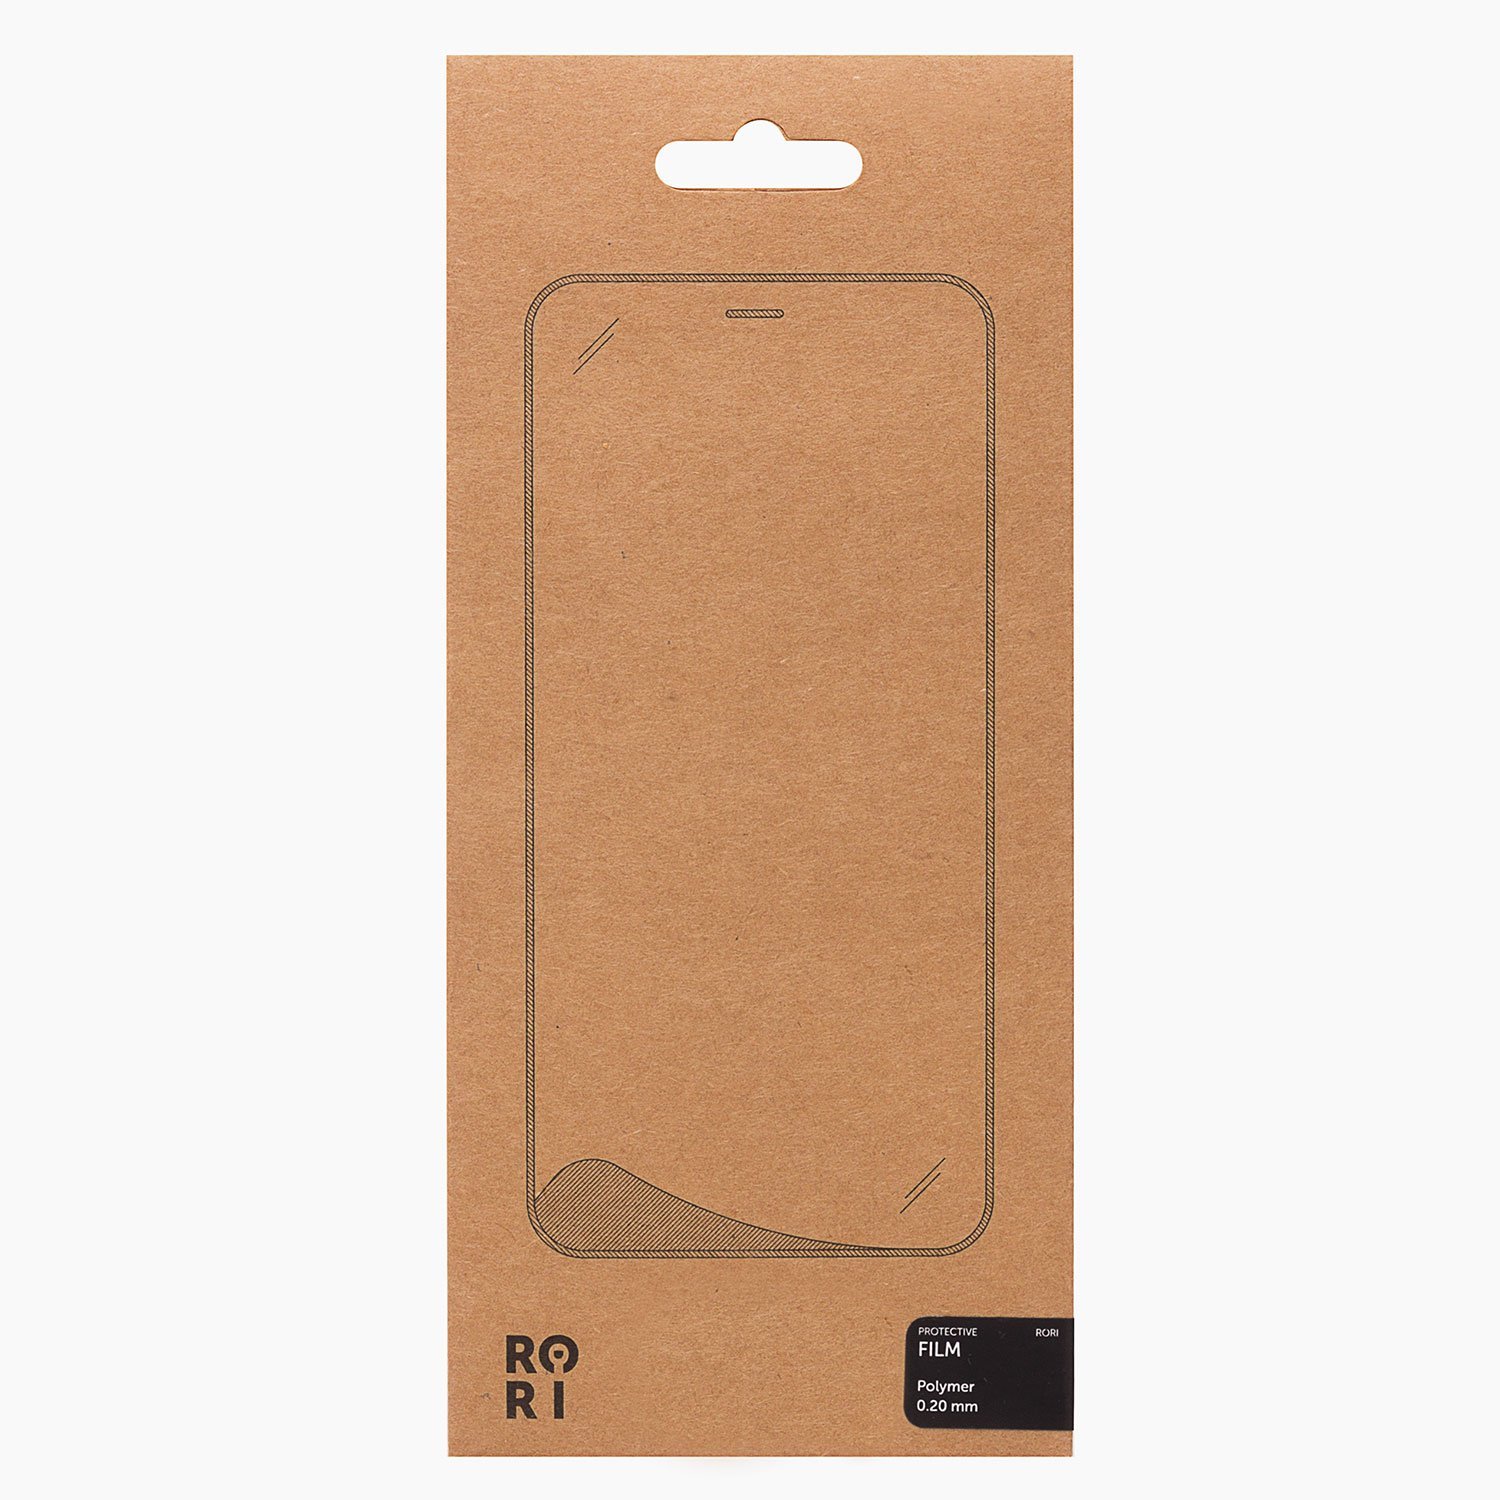 Защитная пленка Rori Polymer для экрана смартфона Huawei Honor 9X Lite, поверхность матовая, черная рамка (125616)